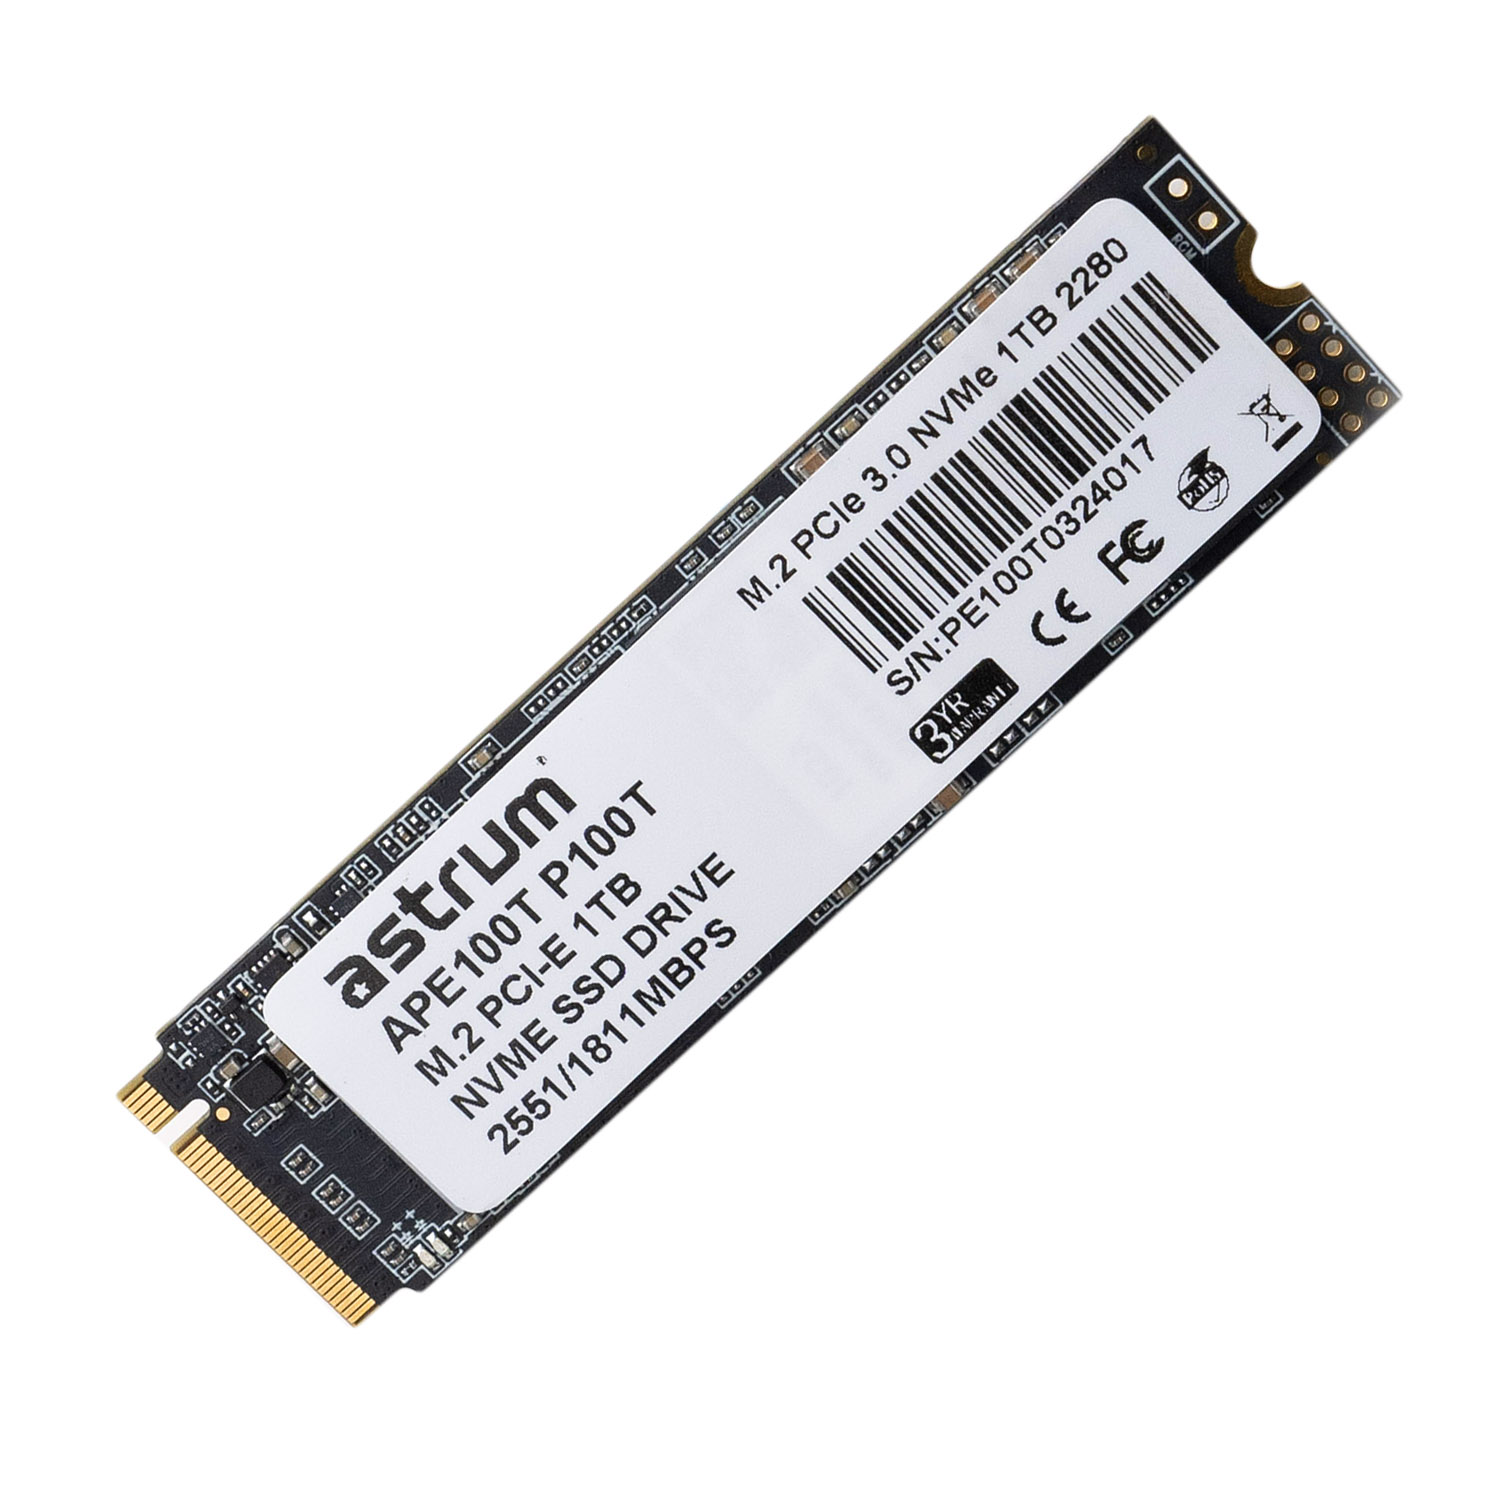 P100T 1TB PCIE-3.0 M.2 NVME SMI SSD